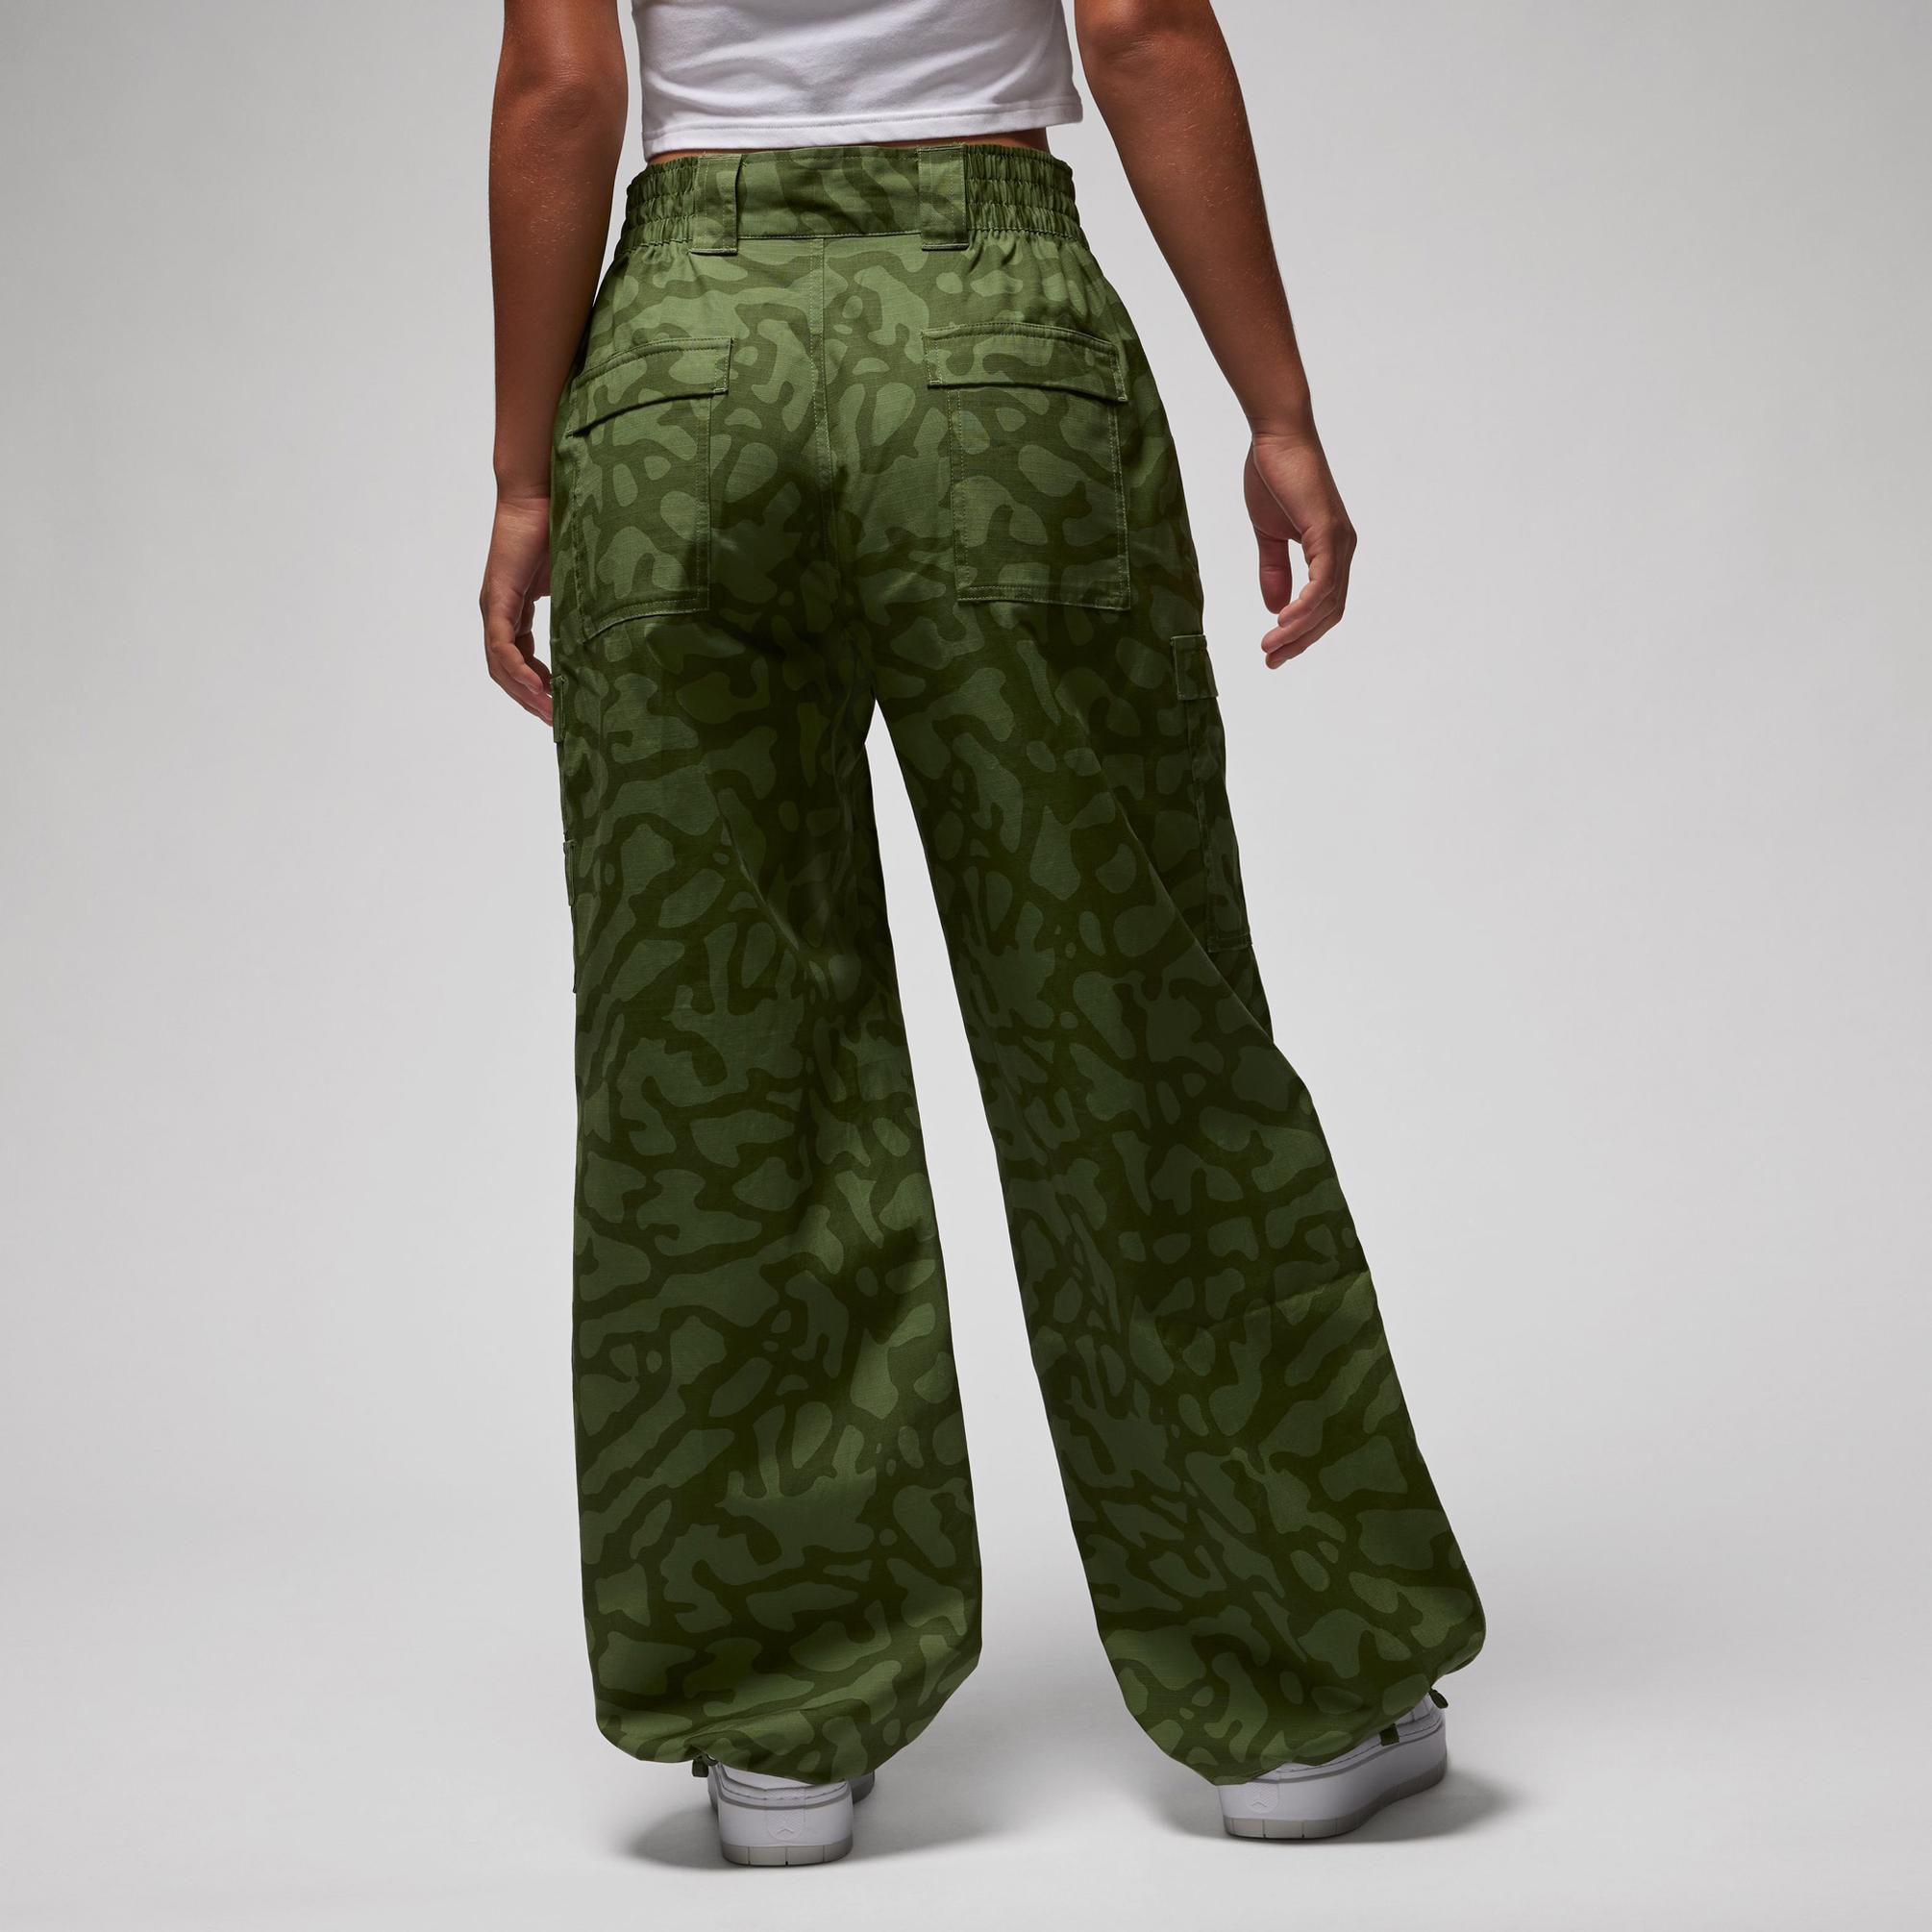  Jordan Chicagot Aop Kadın Yeşil Pantolon